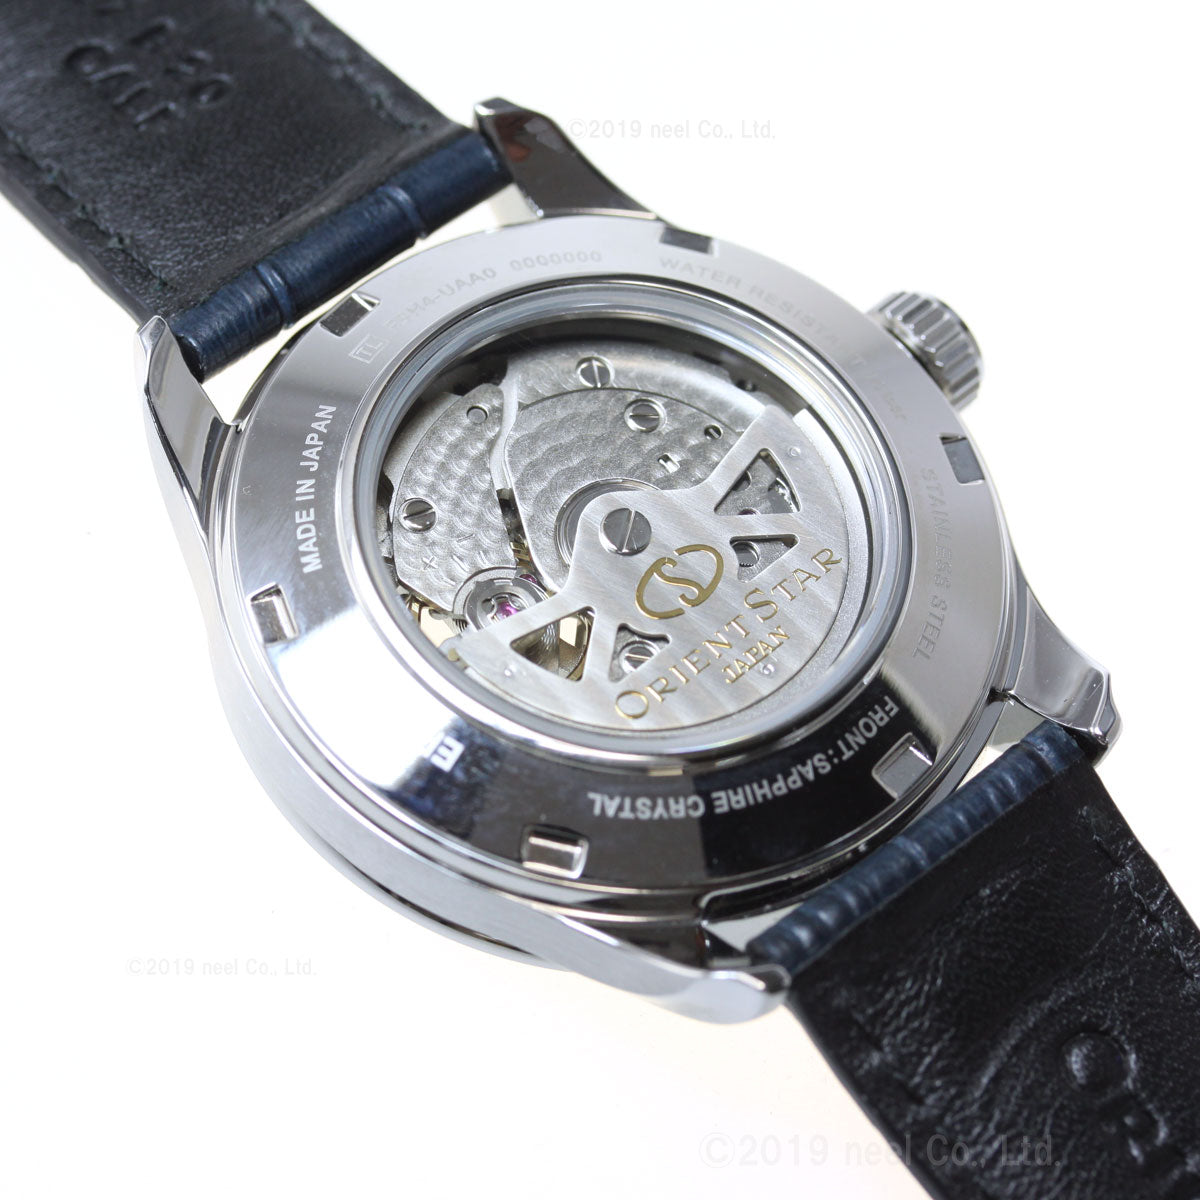 オリエントスター ORIENT STAR 腕時計 メンズ 自動巻き メカニカル コンテンポラリー セミスケルトン RK-AT0006L